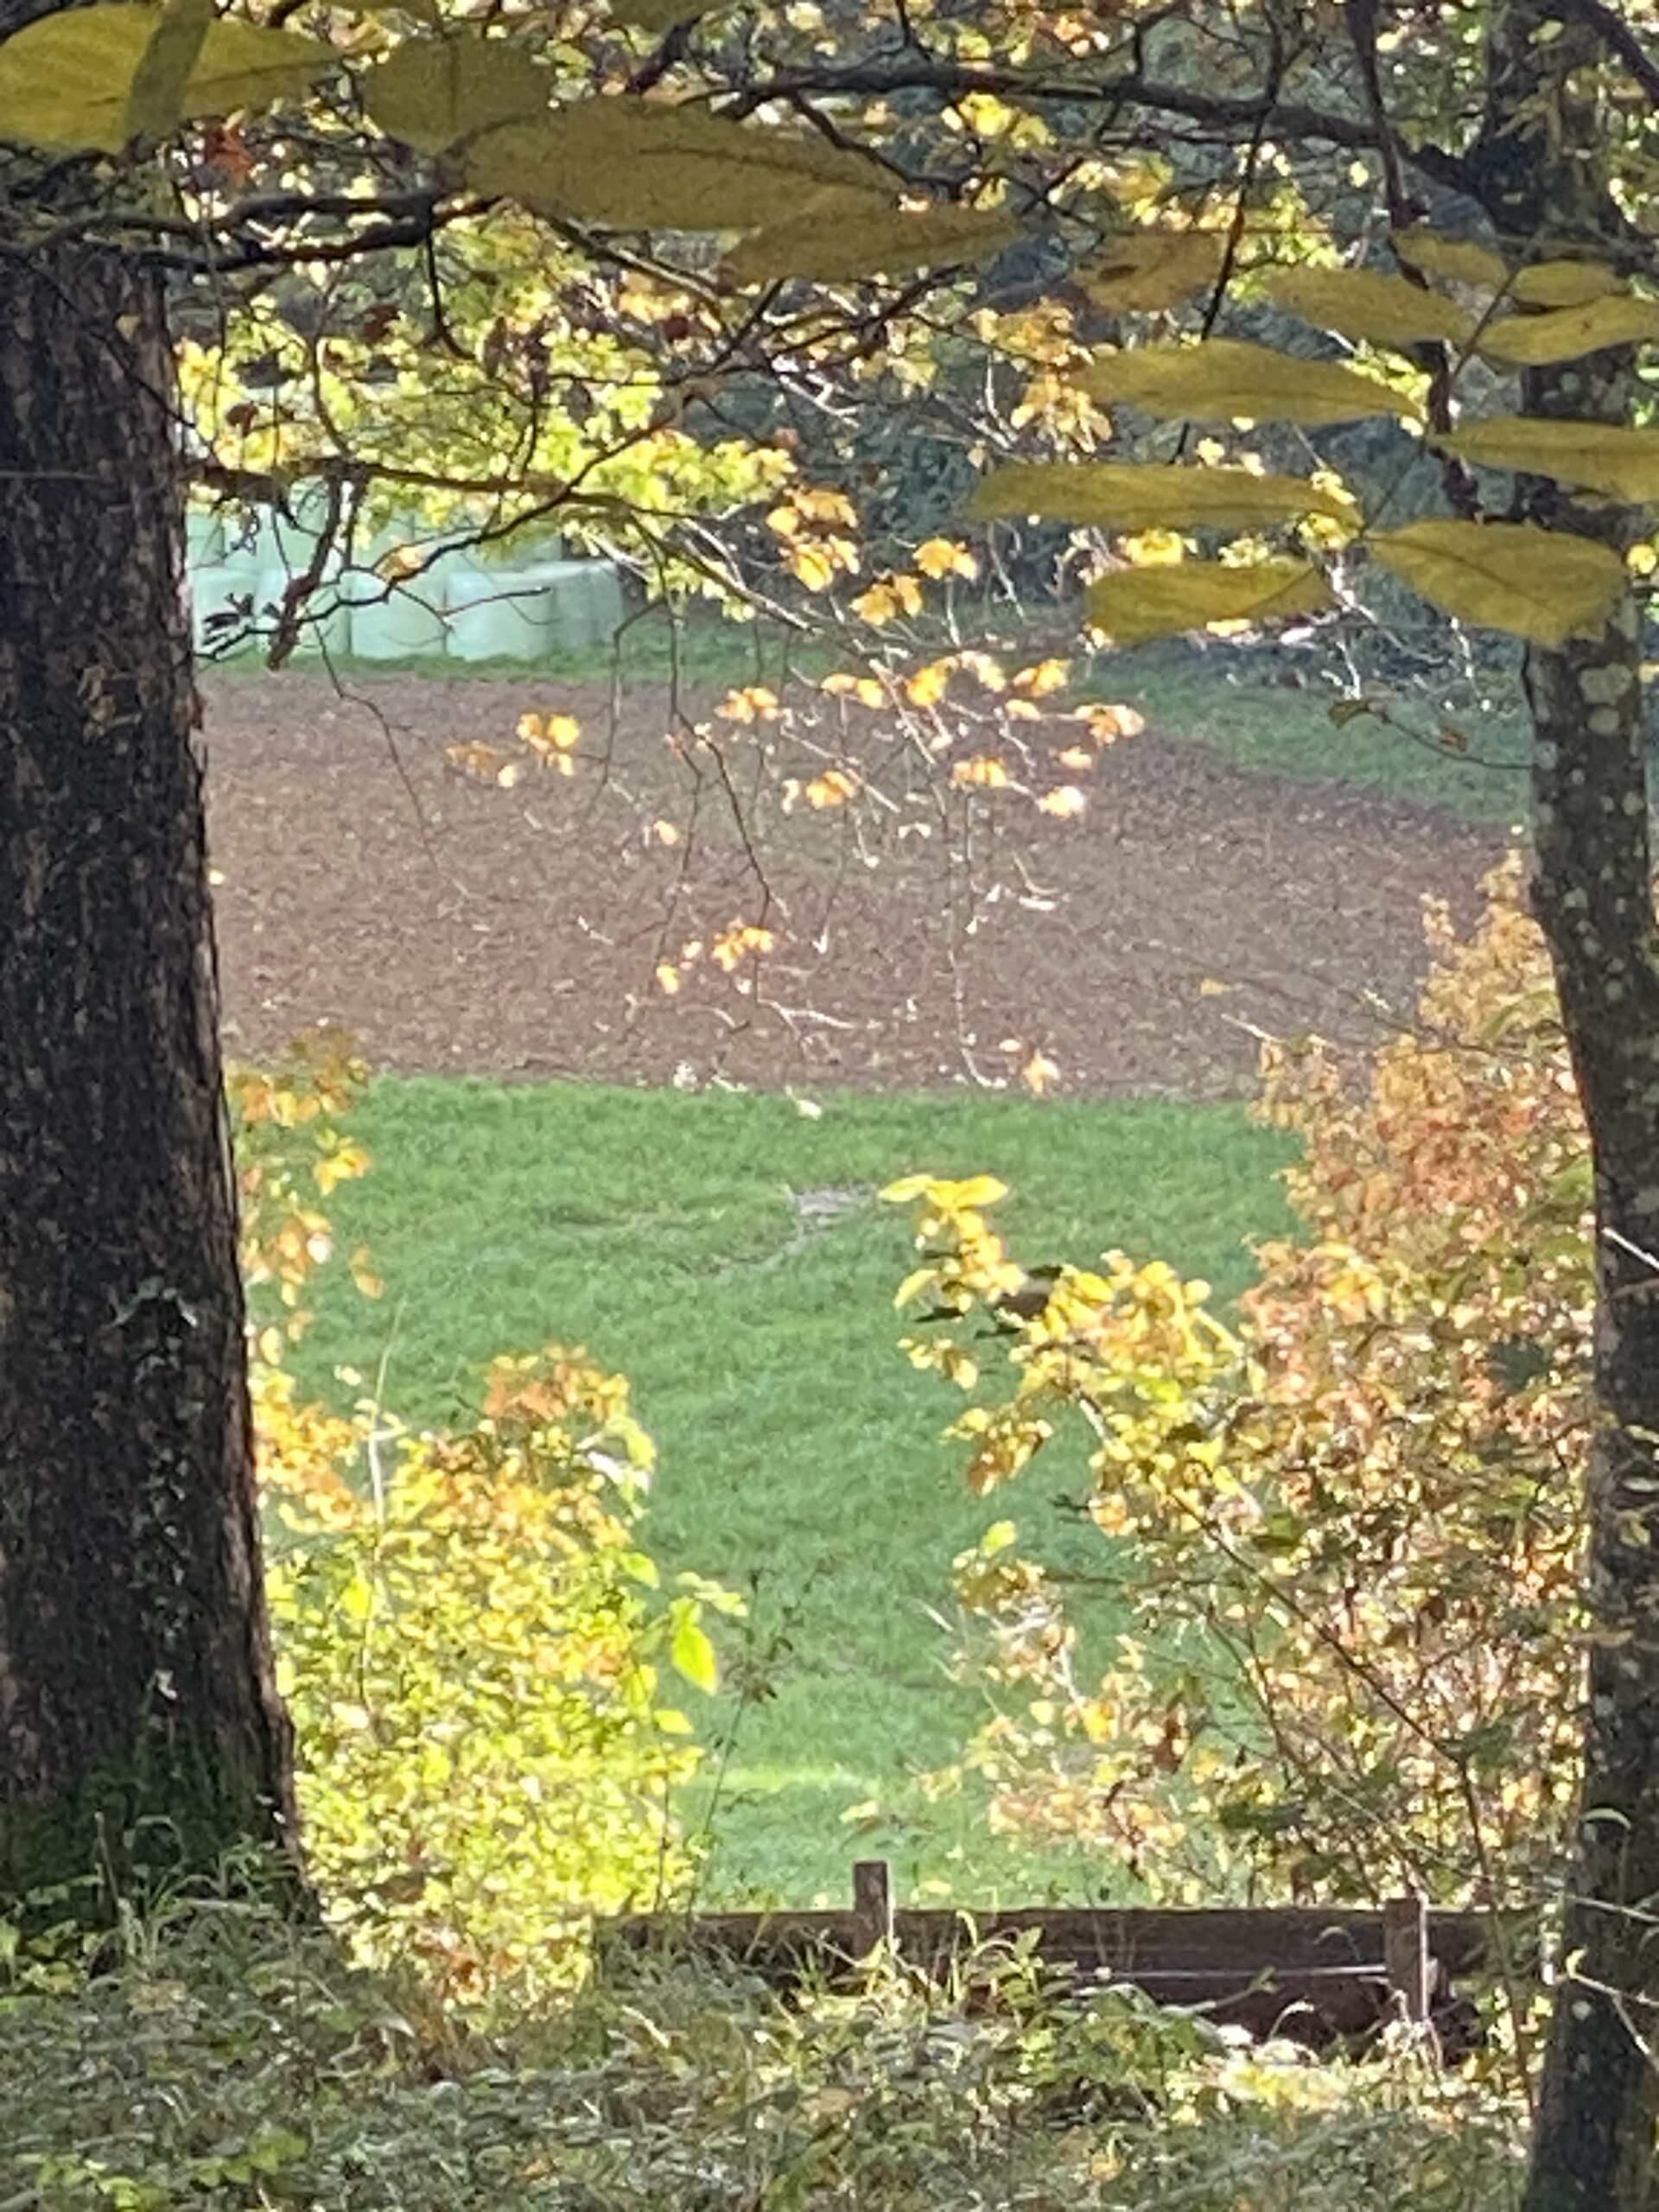 Waldbaden beim Blätterdach des Laubbaumes